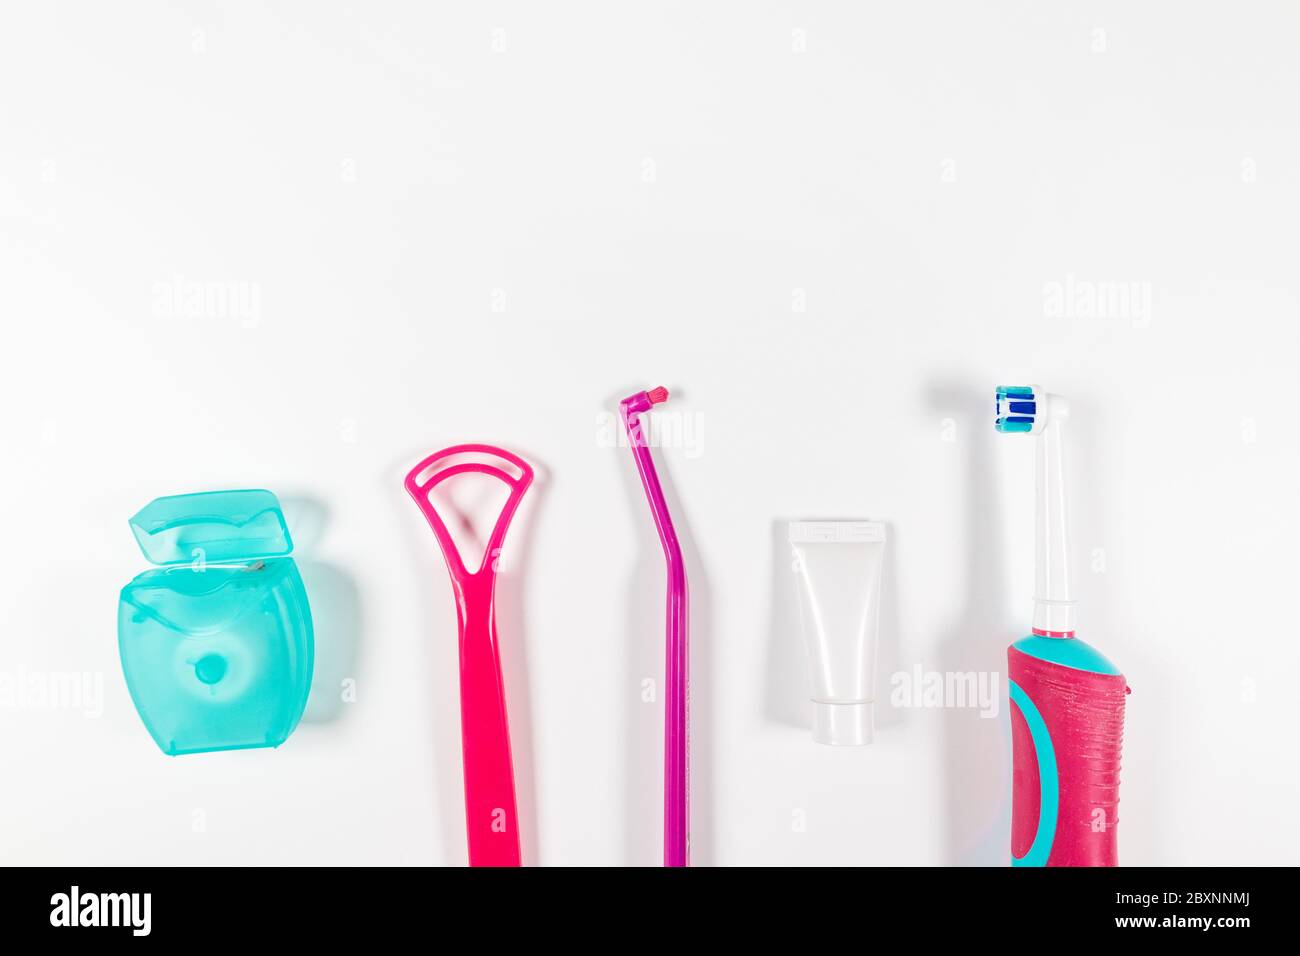 Ultraschall rosa Zahnbürste und Zahnhygiene-Produkte auf grauem  Hintergrund. Zahnprodukte für die Zahnbürste, gesunde Zahnpflege und  Mundhygiene Stockfotografie - Alamy